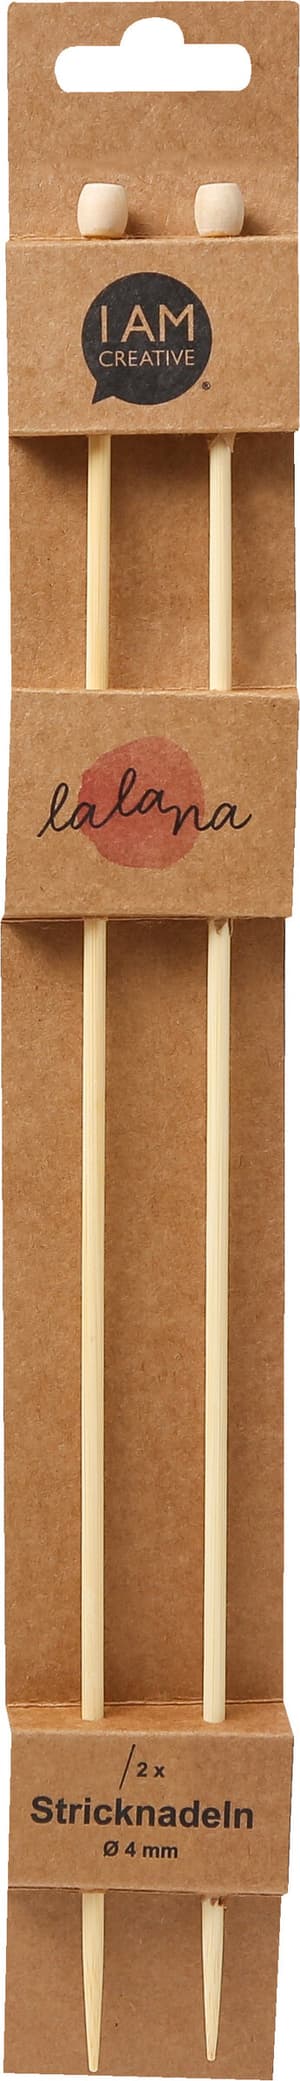 Stricknadeln, Bambus-Stricknadeln für Anfänger und Experten, Natur, ø 4 x 350 mm, 2 Stk.